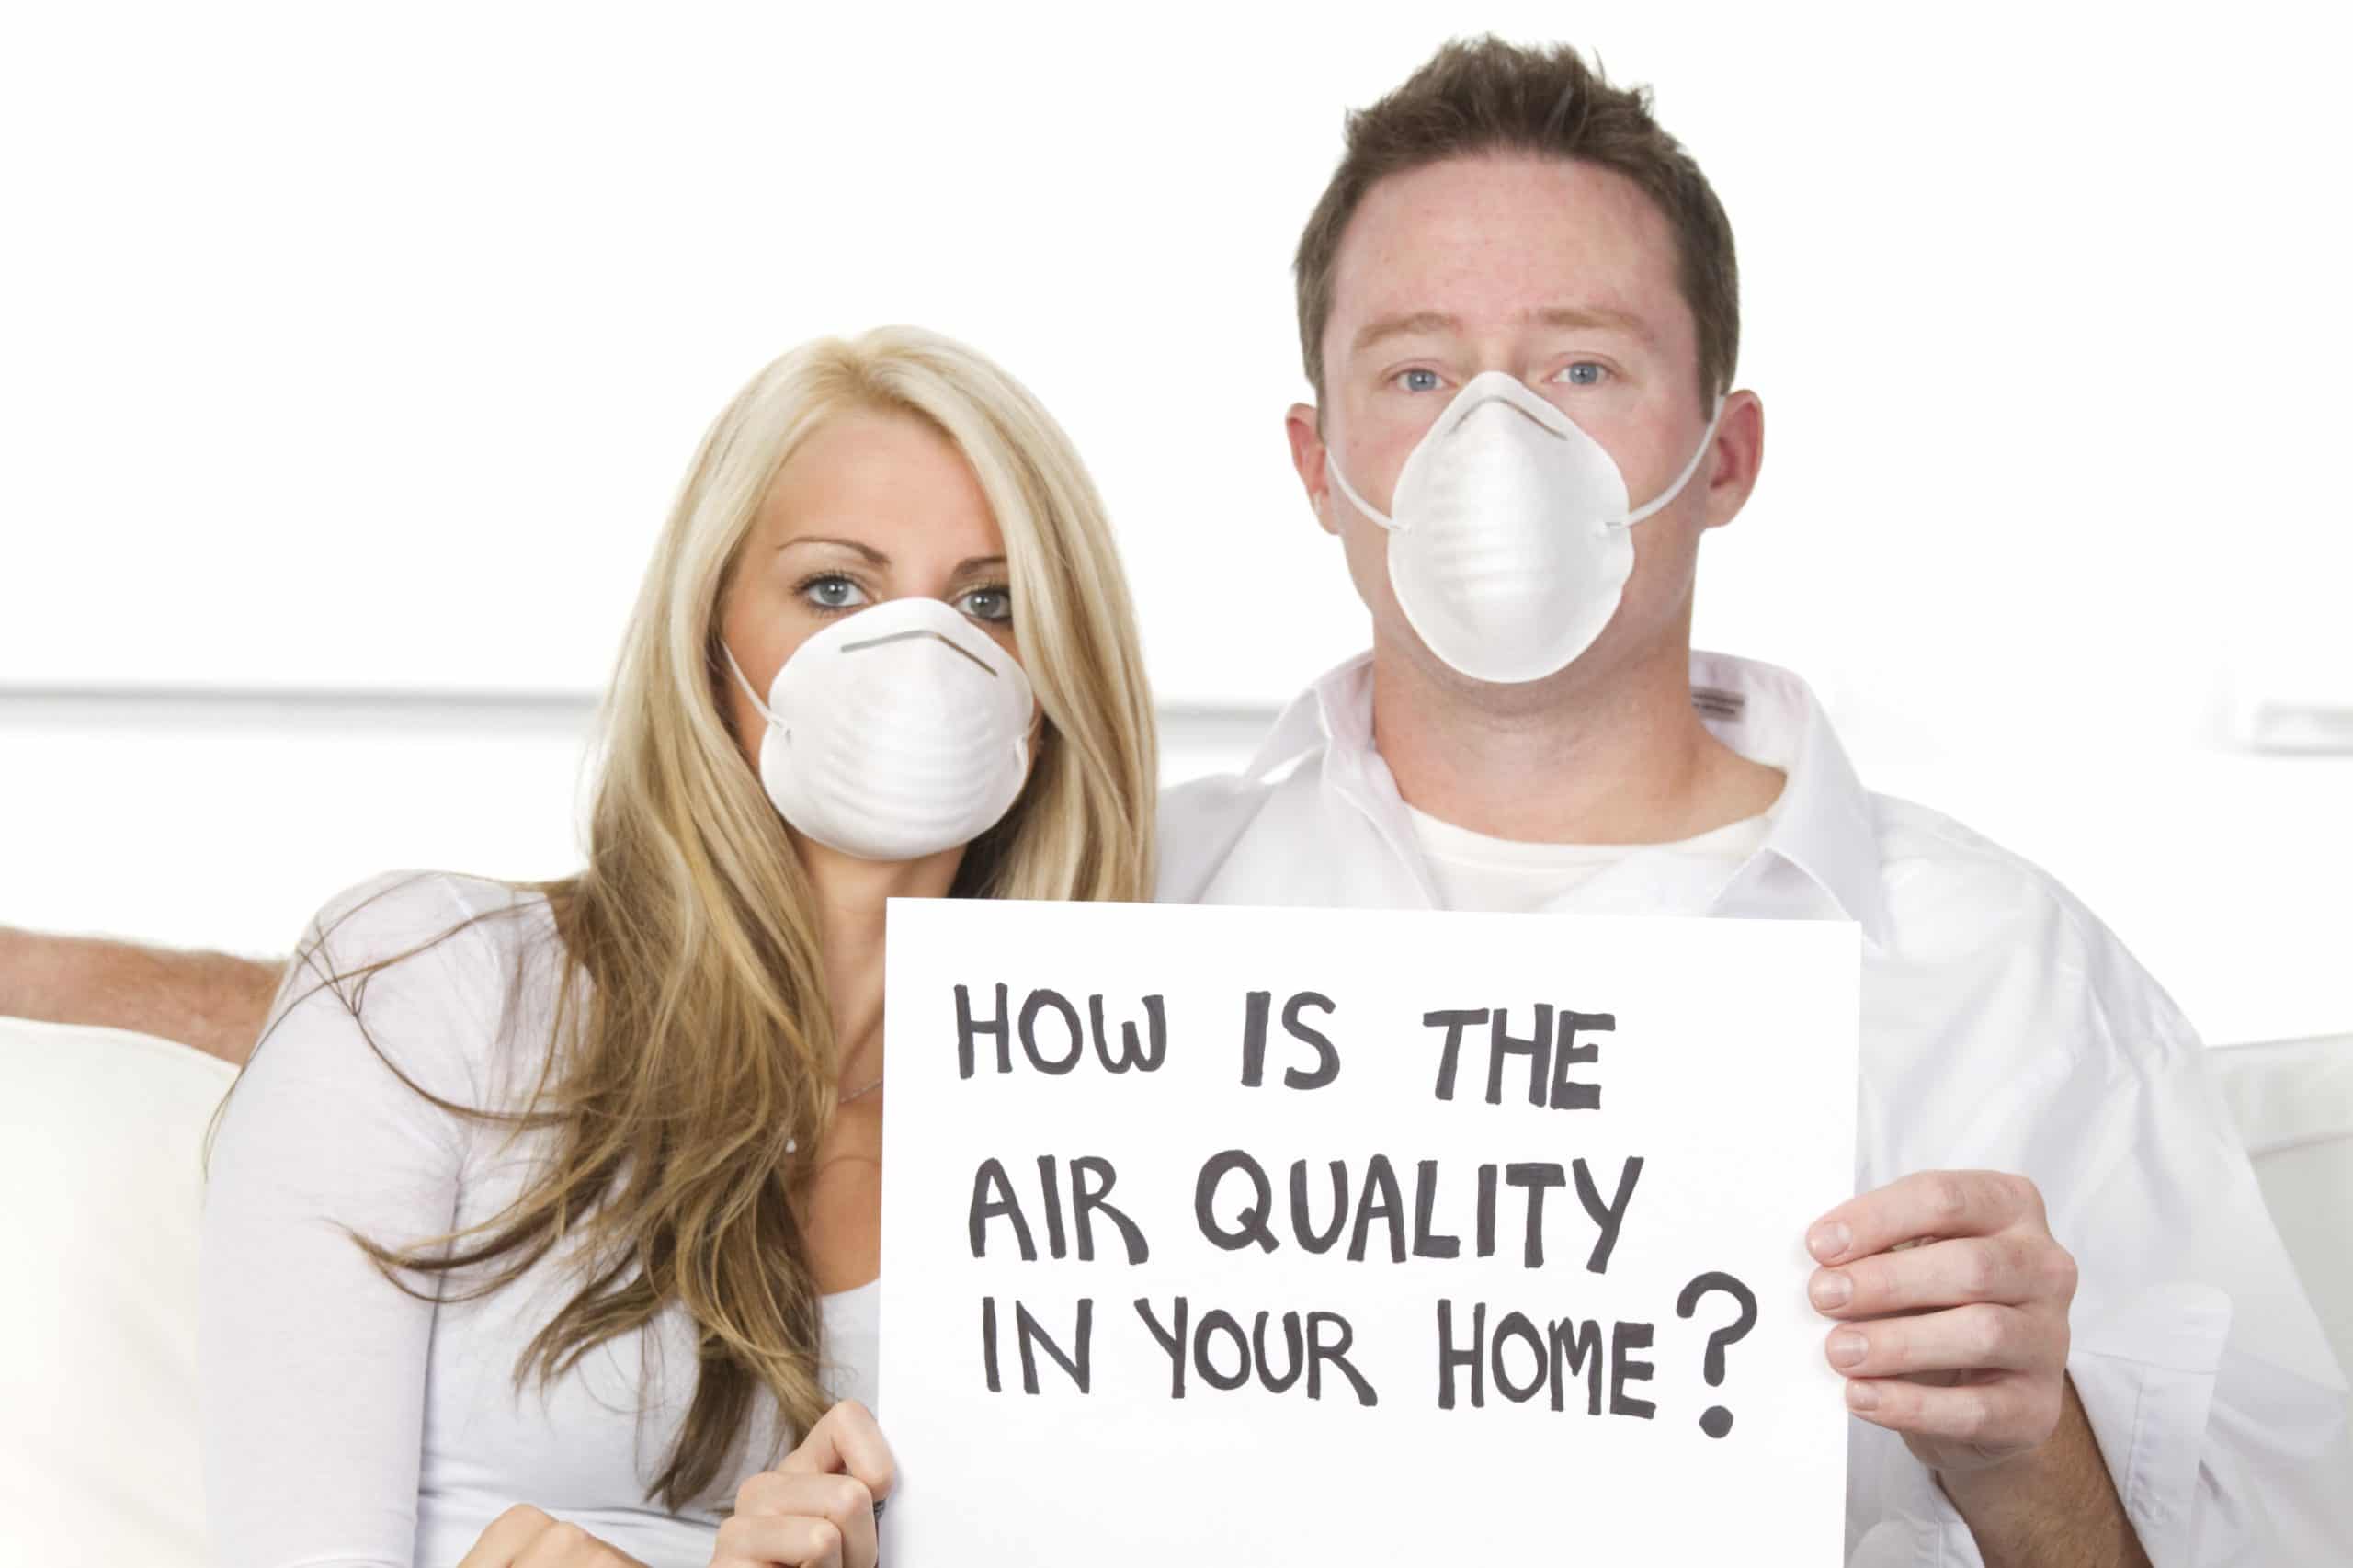 indoor-air-quality-ez-breathe